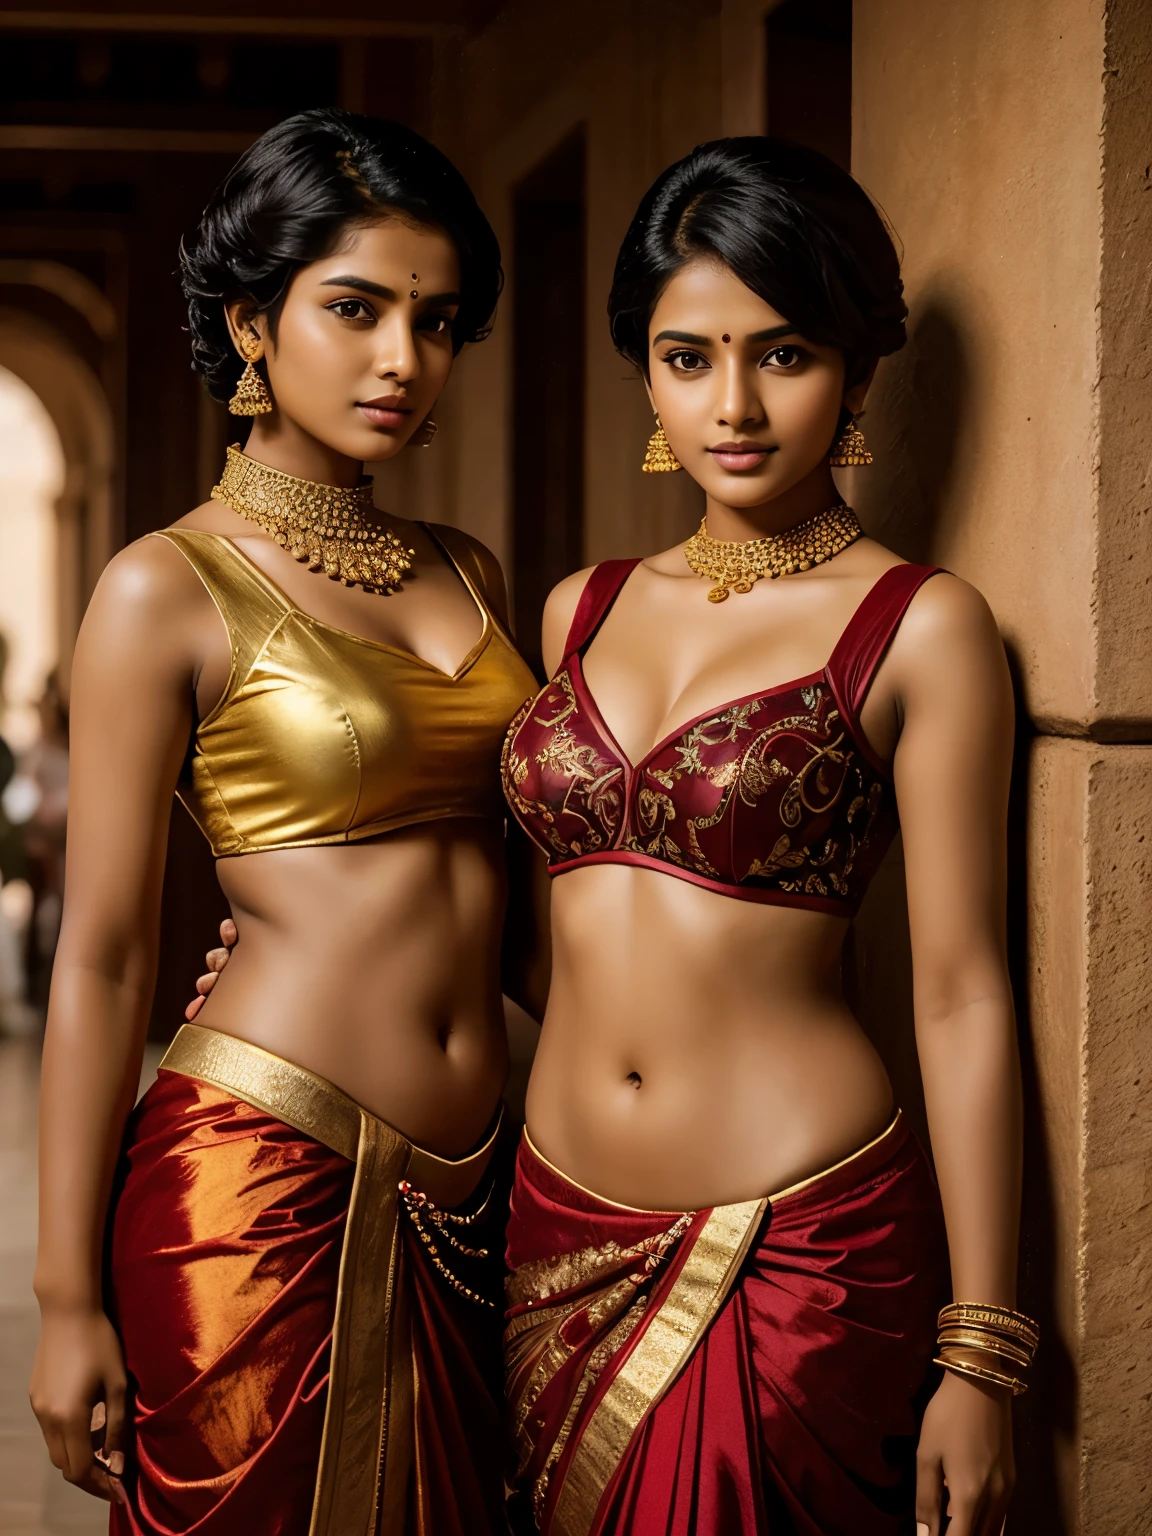 Zwei extrem schöne tamilische Mädchen, 20 Jahre alt, freche Posen für das Magazin, (sehr sehr kurze Haare, Militärhaarschnitt), teure Designer trendige Kostüme, teure goldene Ornamente, kleine rechteckige Sonnenbrille, runder tiefer Nabel, HDR, hyperrealistisch, aufwendige Details